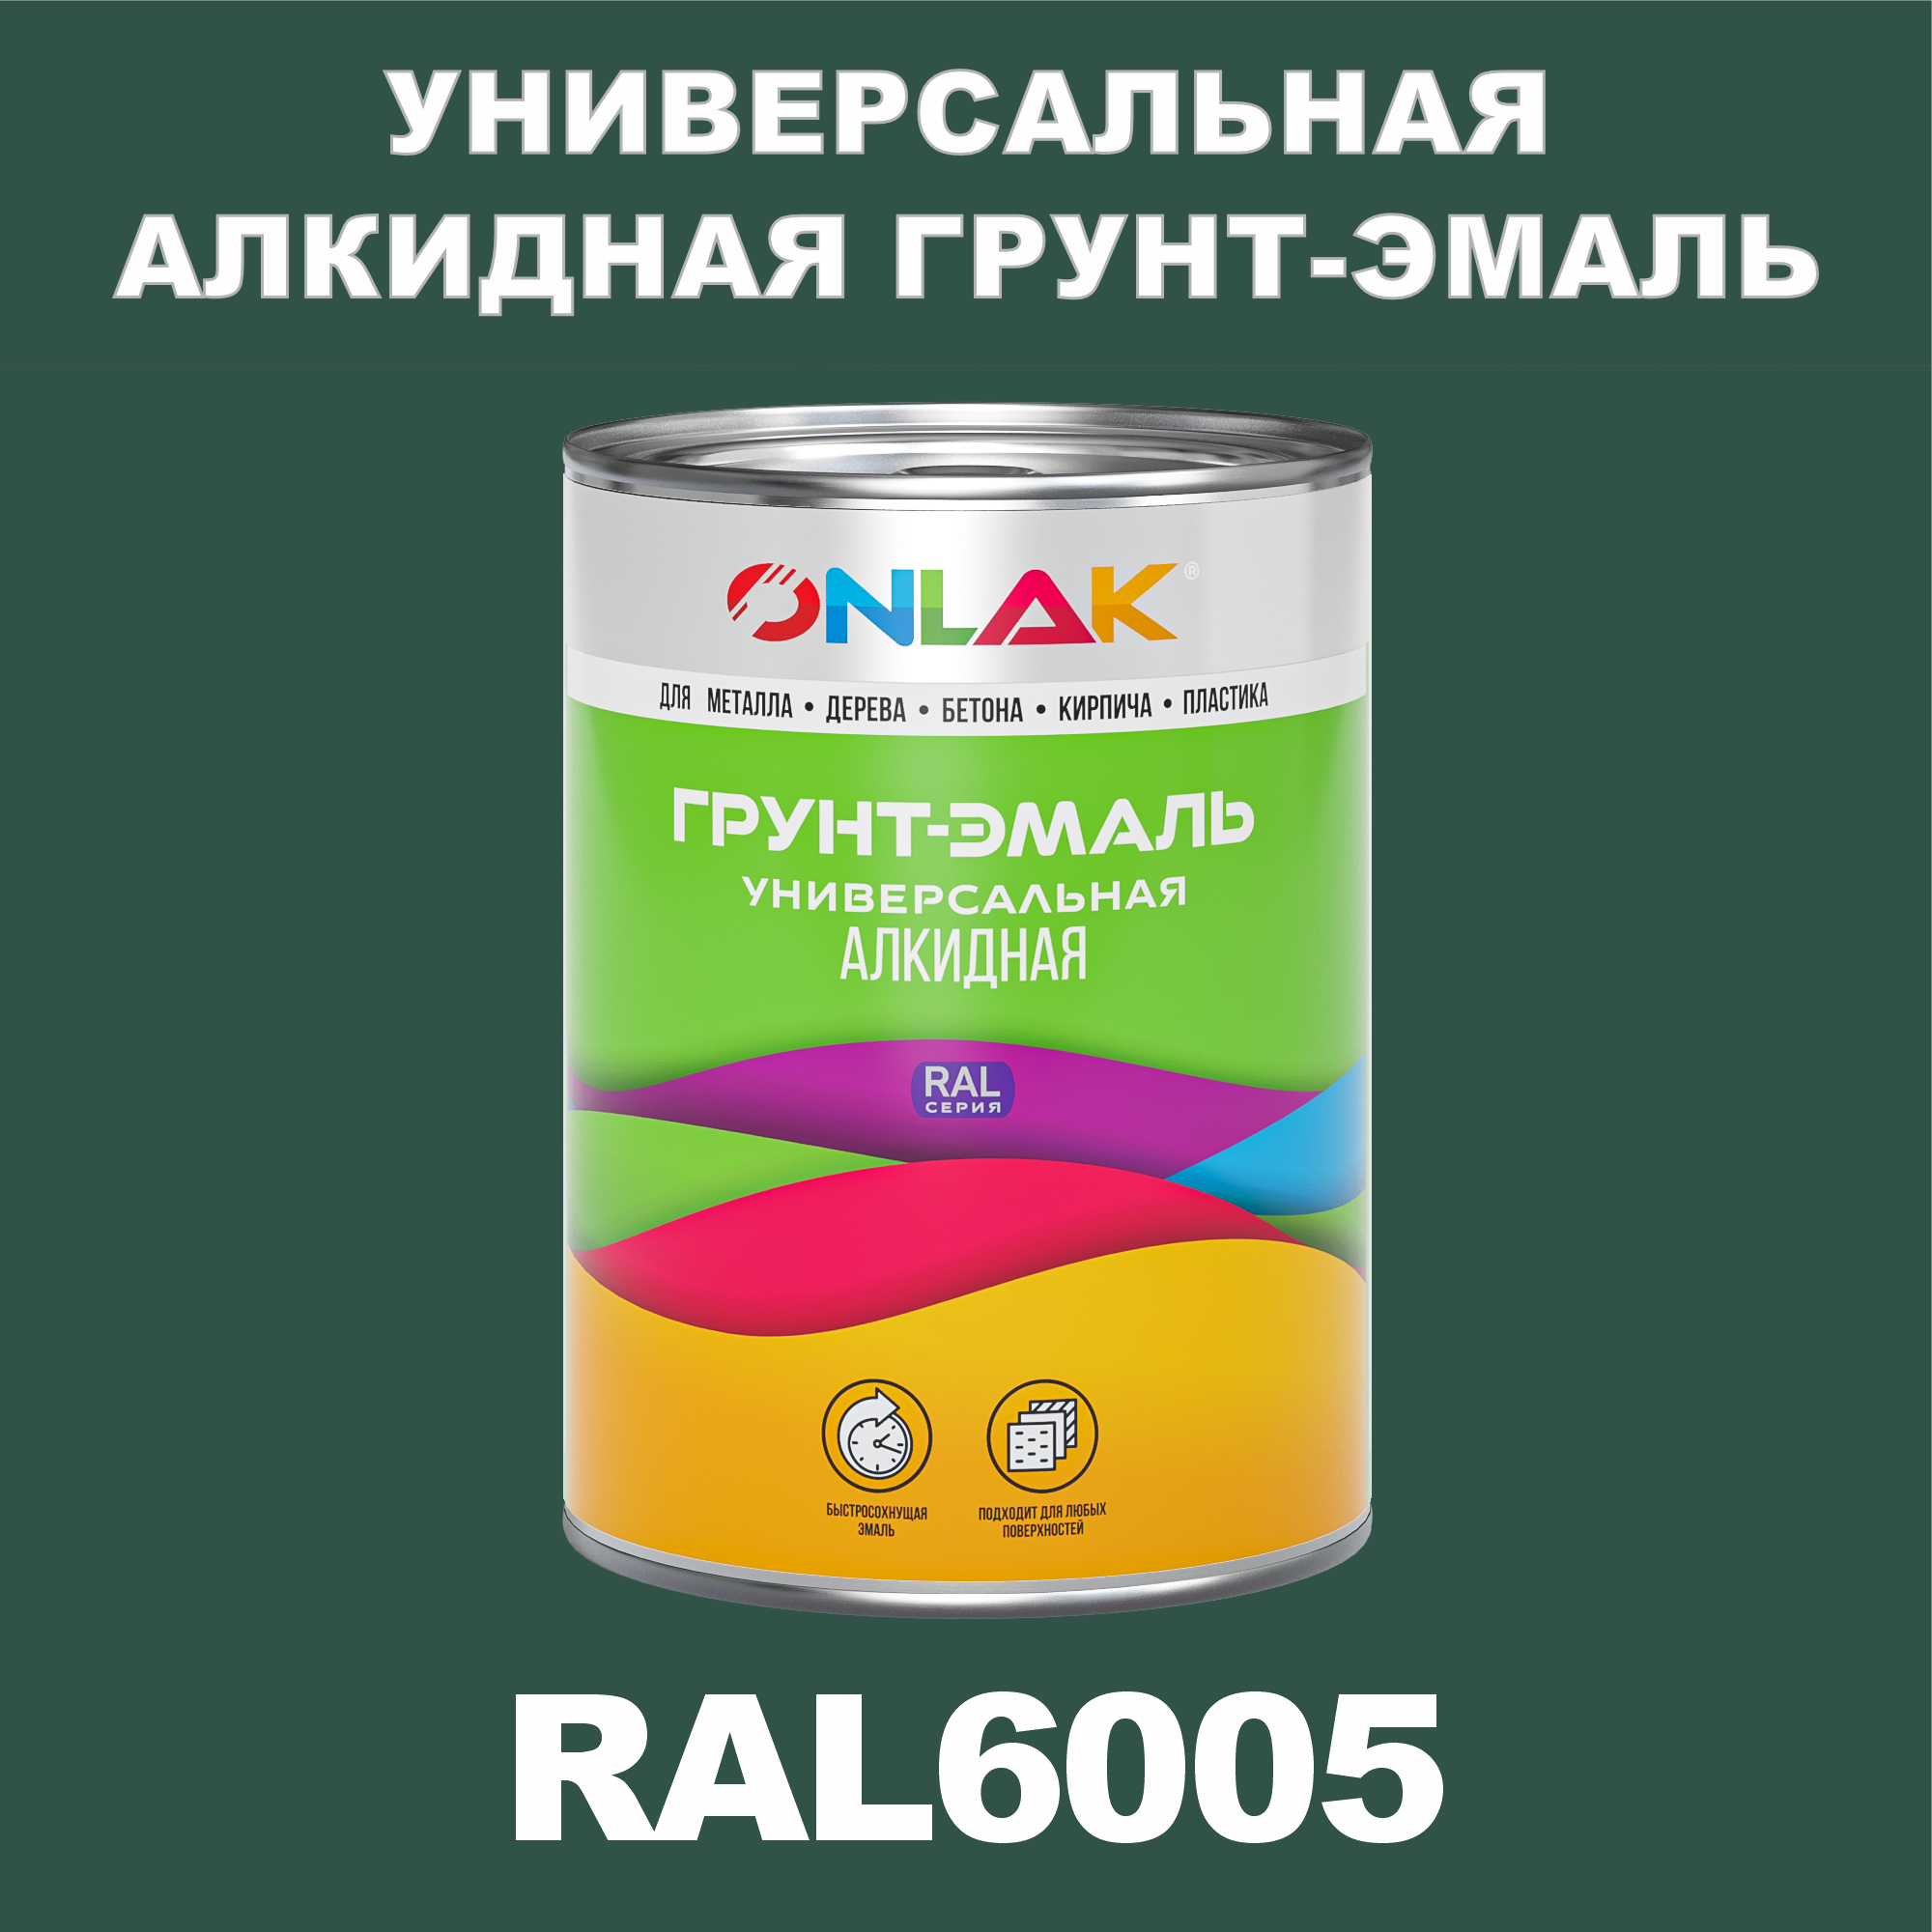 Антикоррозионная алкидная 1К грунт-эмаль ONLAK в банке быстросохнущая матовая по металлу по ржавчине банка 20 кг RAL9004